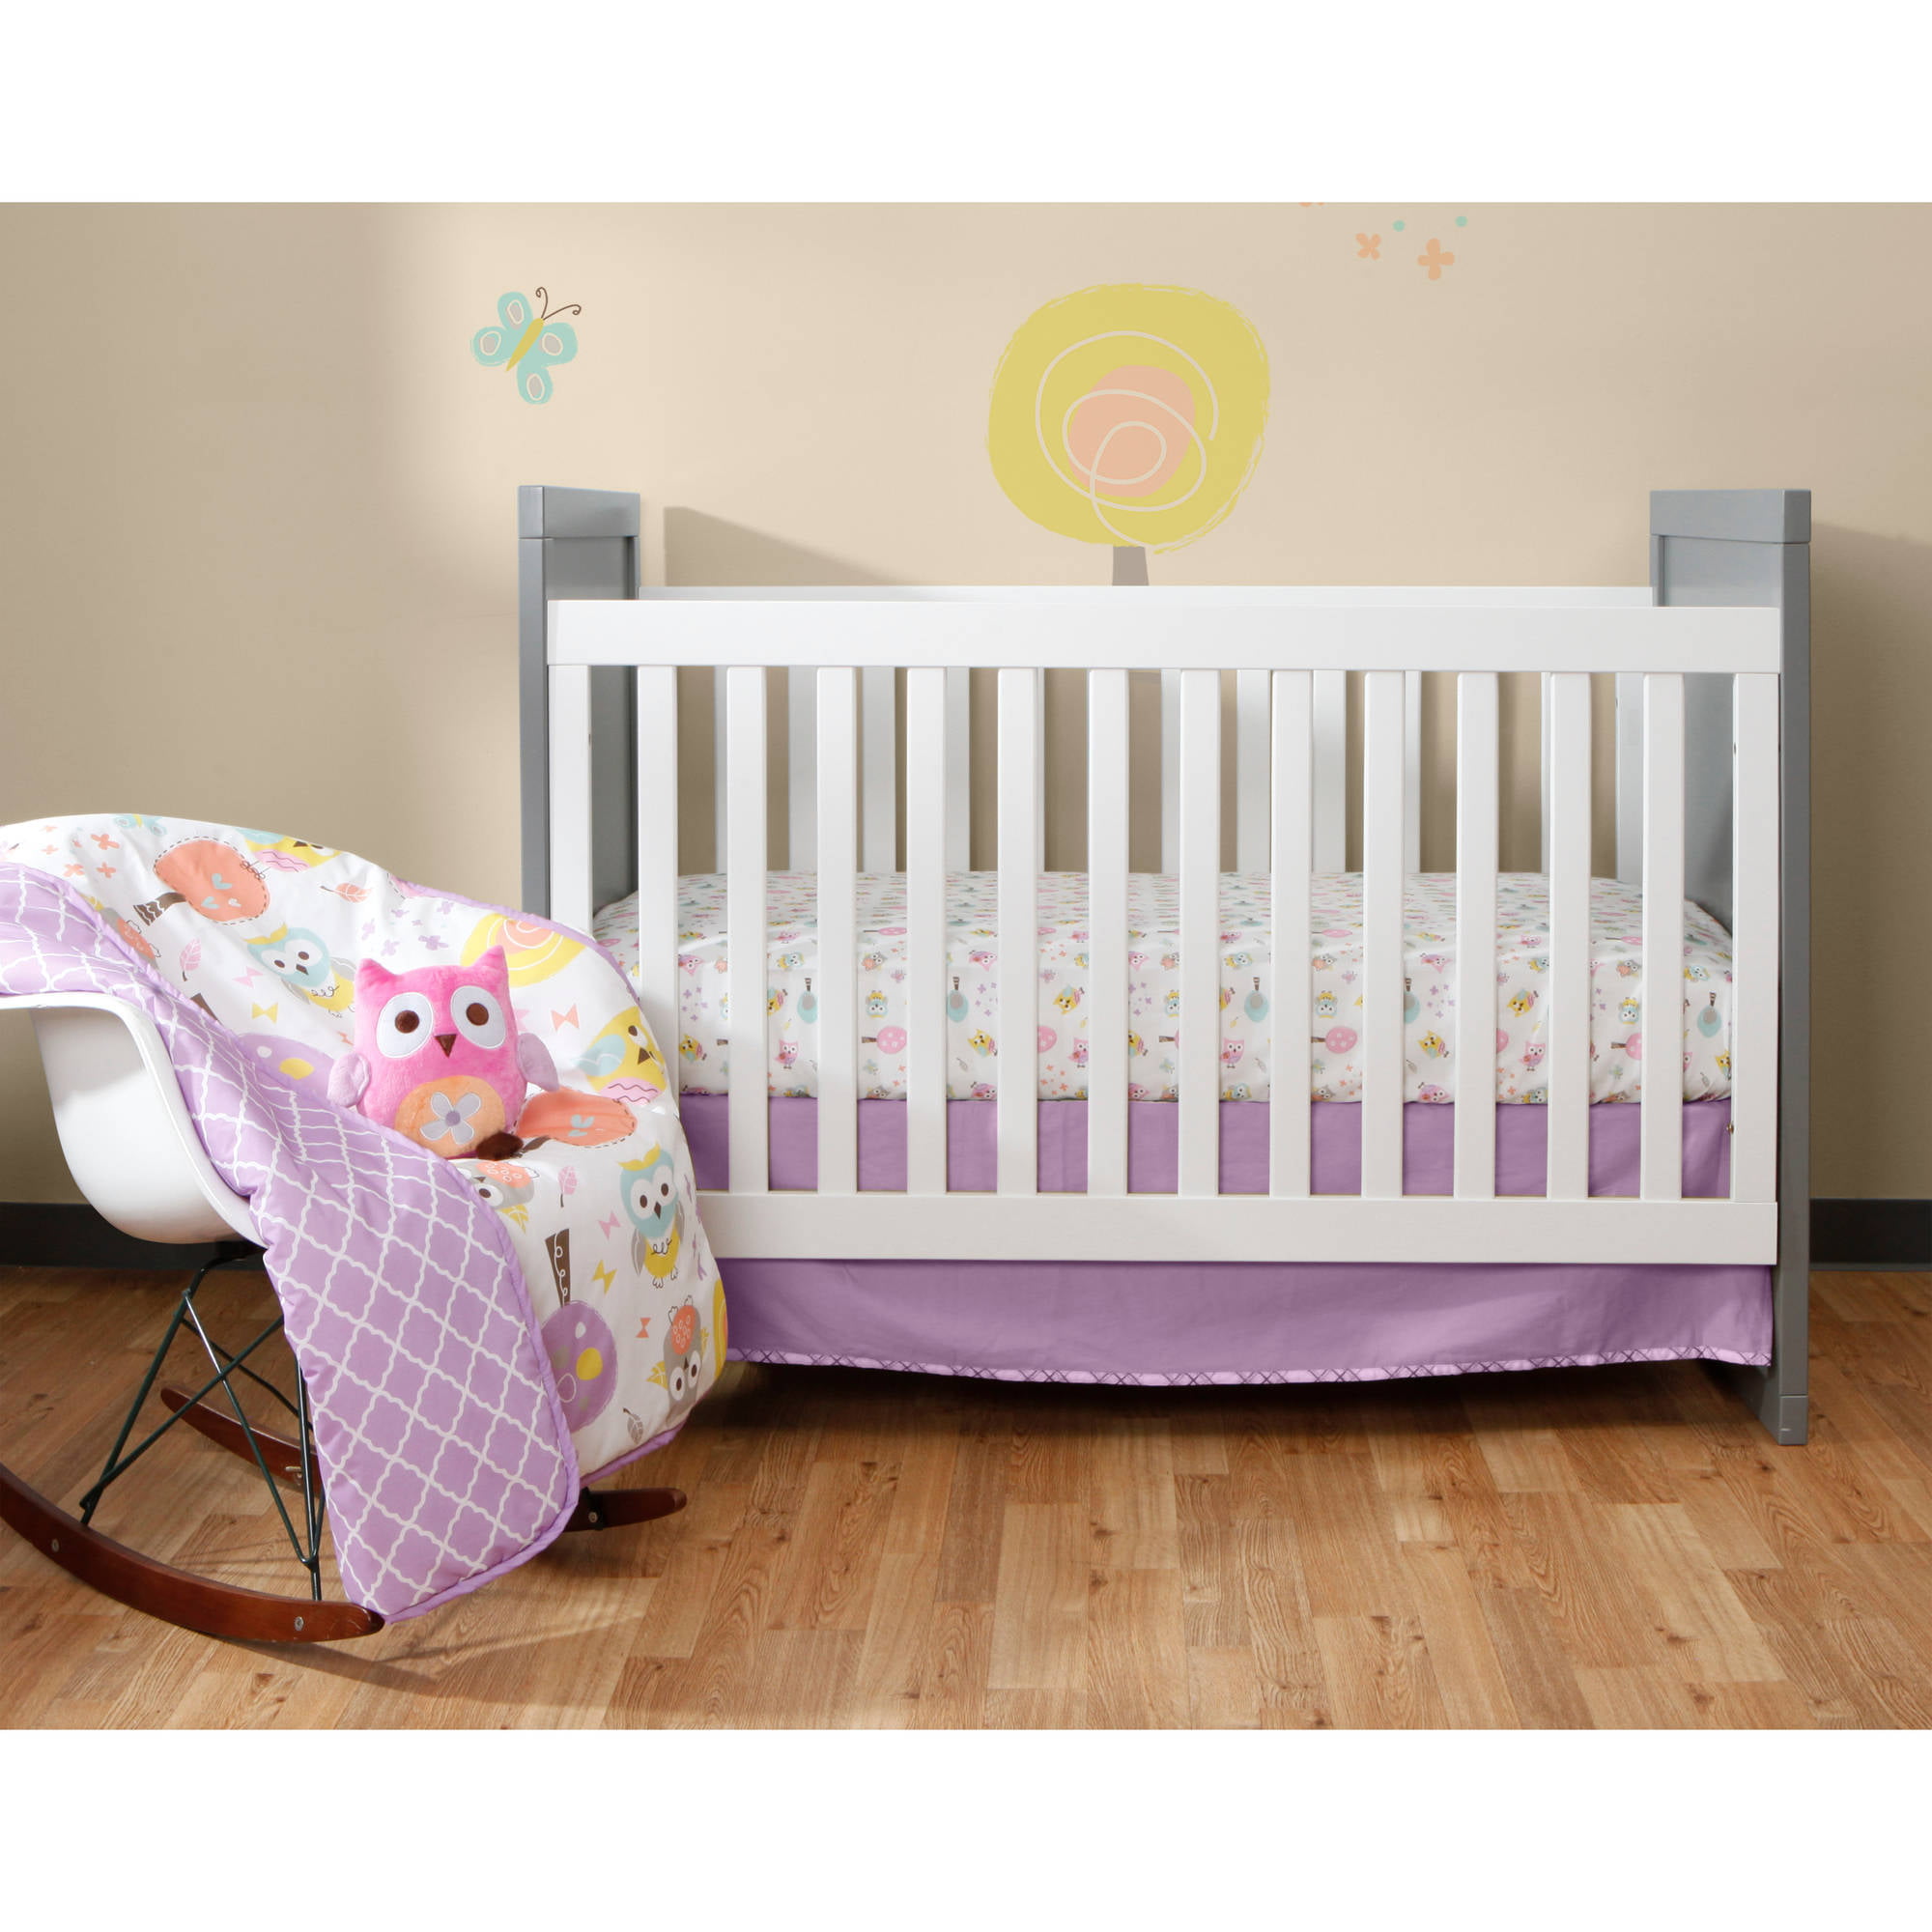 mattress extender for baby